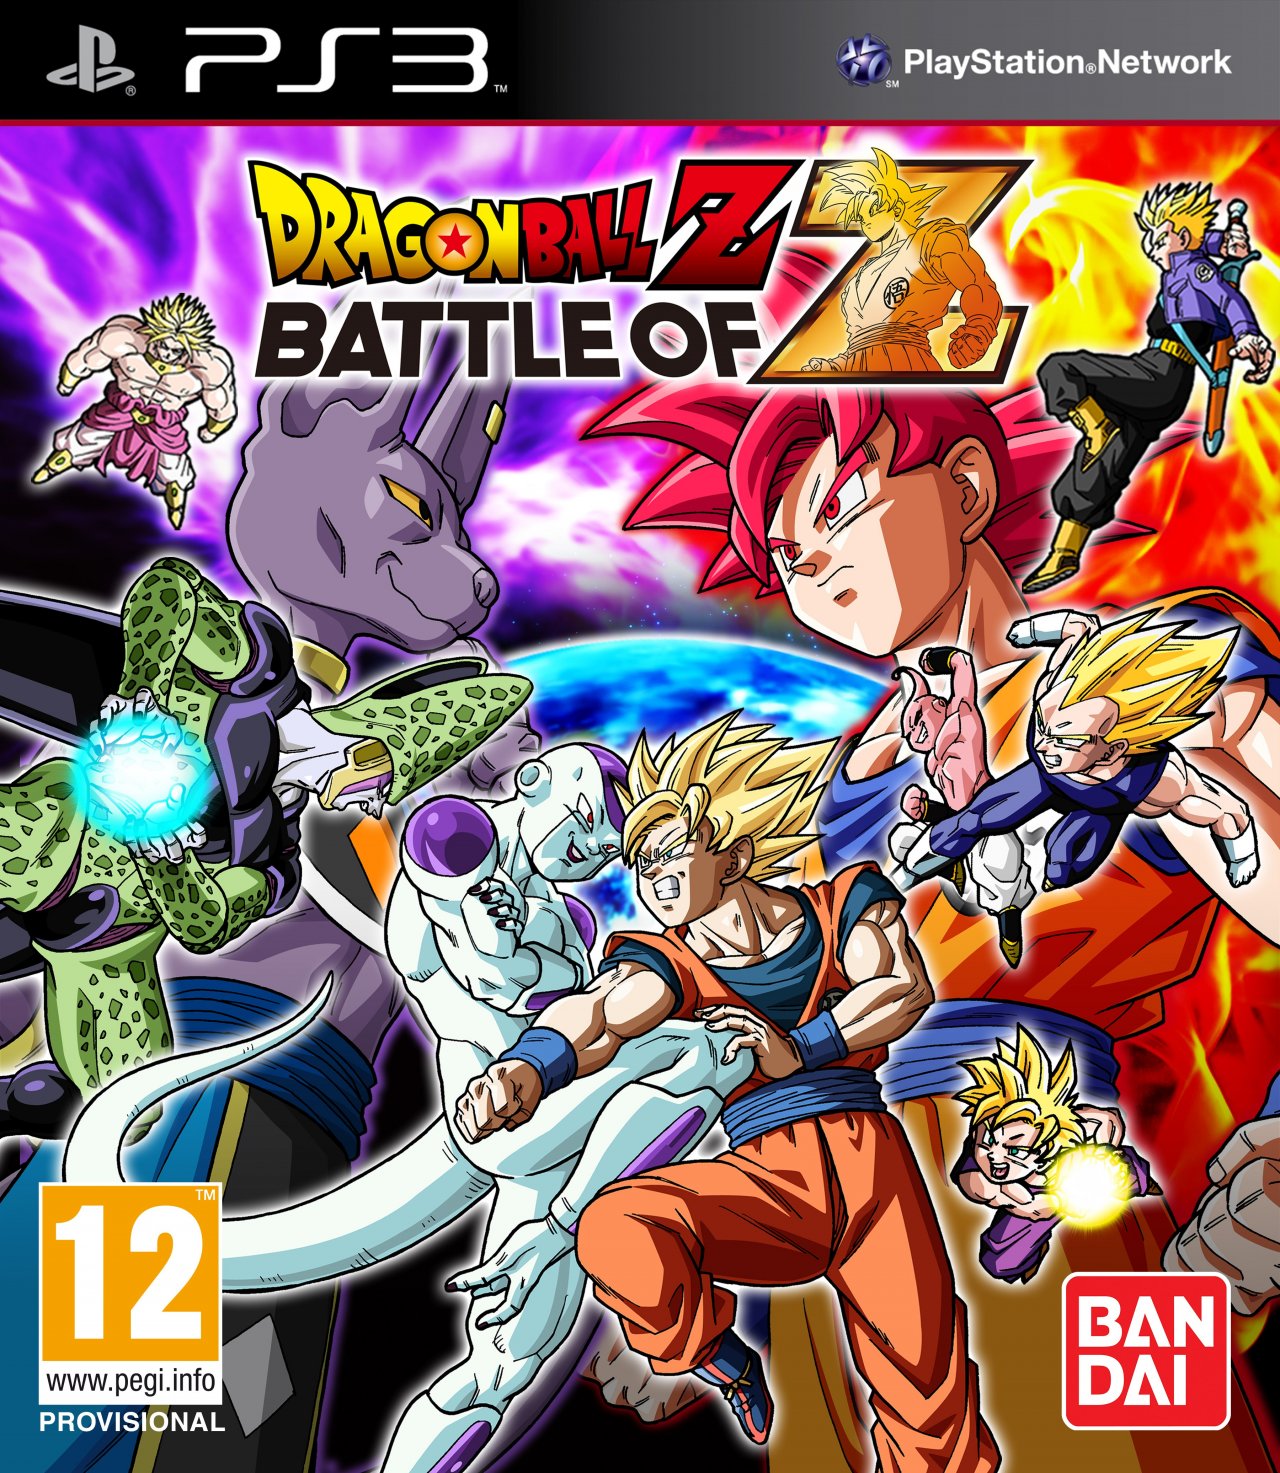 jaquette du jeu vidéo Dragon Ball Z : Battle of Z